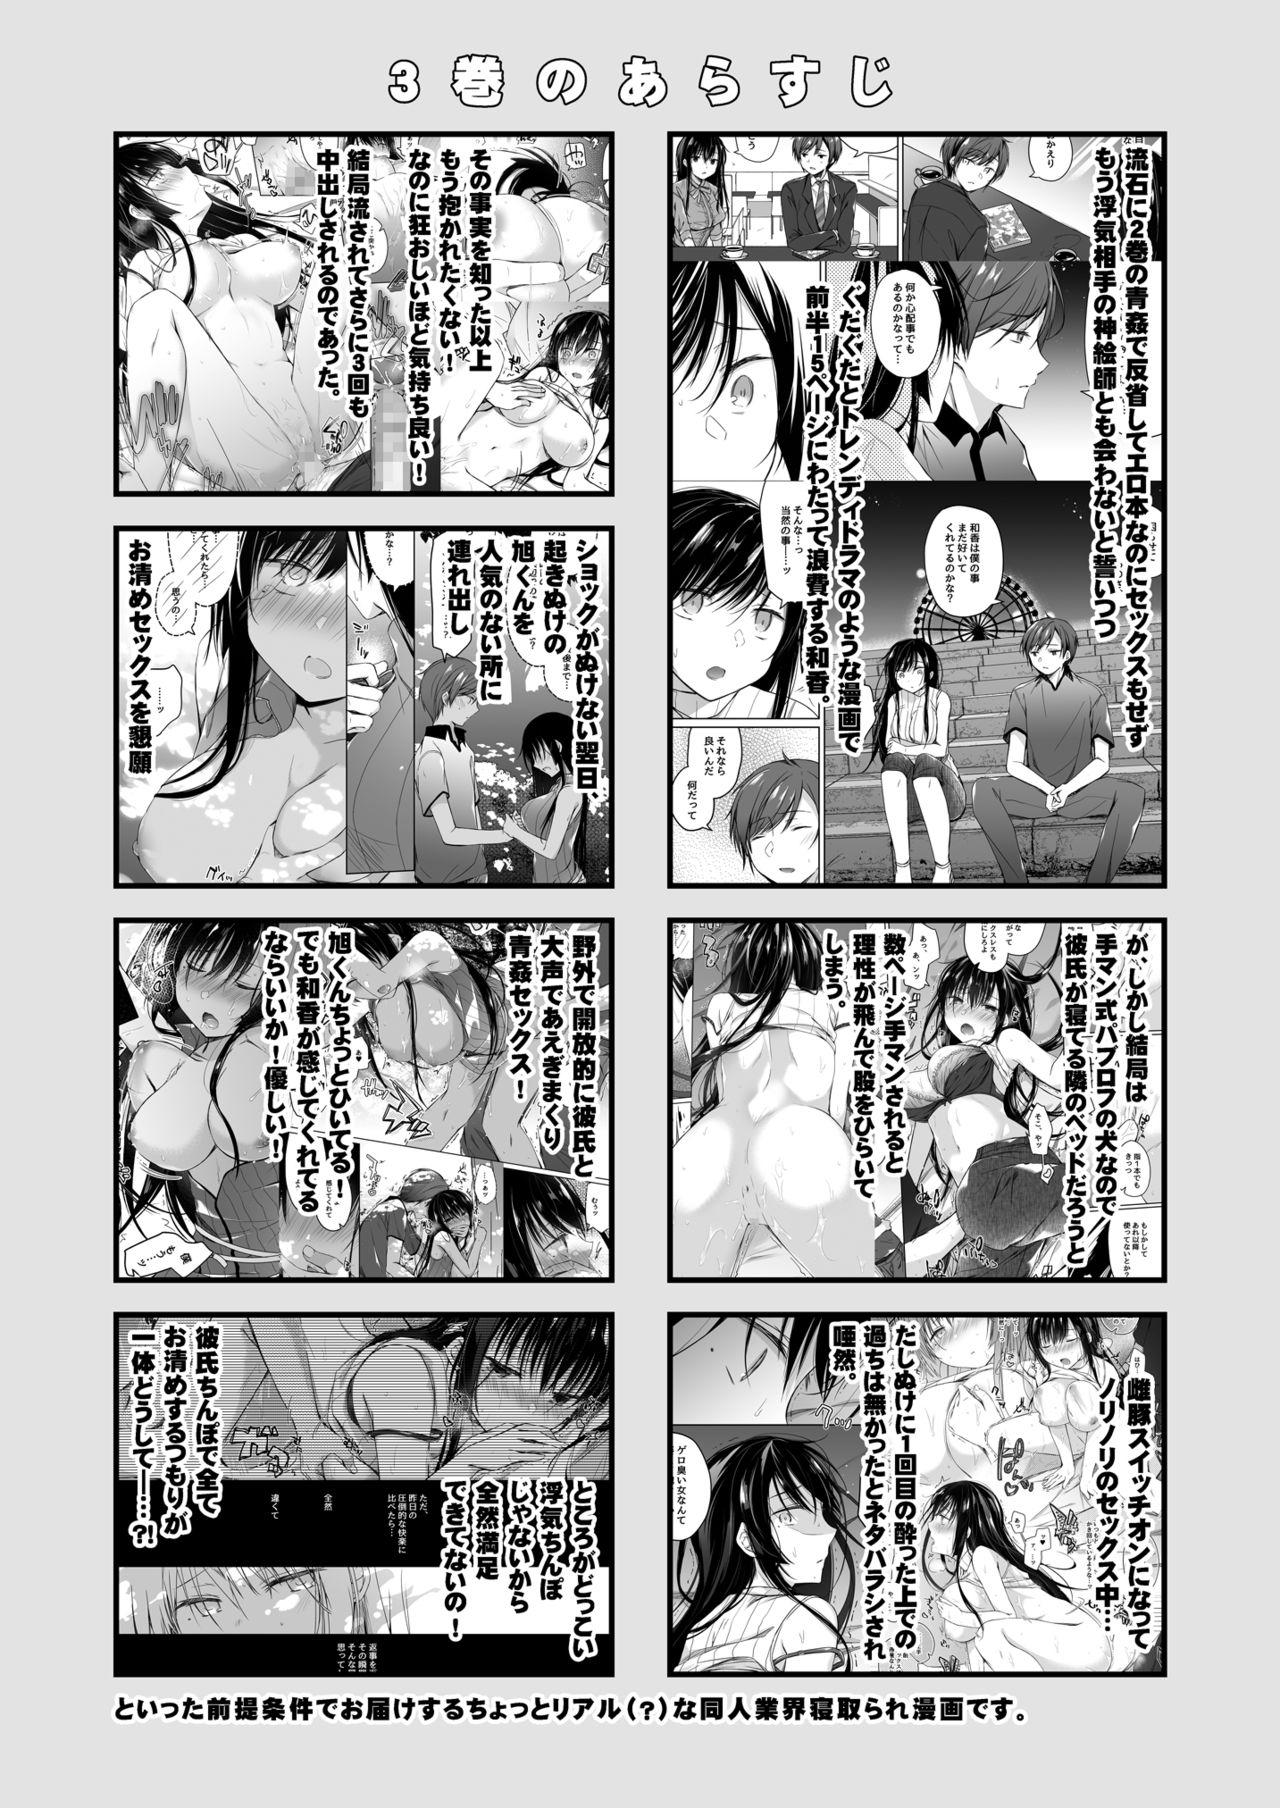 Pussylicking Ero Doujin Sakka no Boku no Kanojo wa Uwaki nante Shinai. 4 - She will never let me down. - Final fantasy vii Korea - Page 6